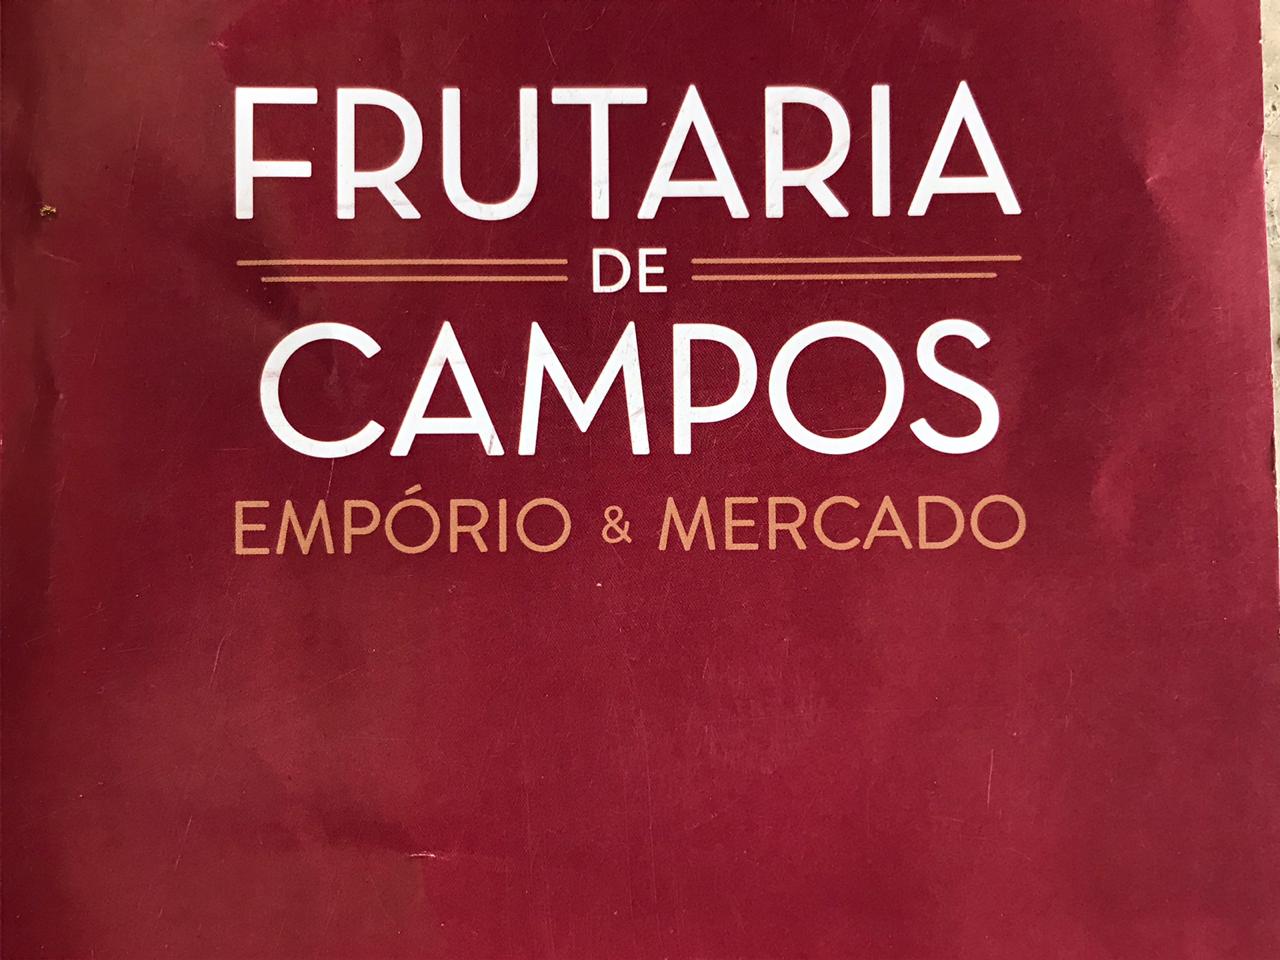 Frutarias - Frutaria de Campos